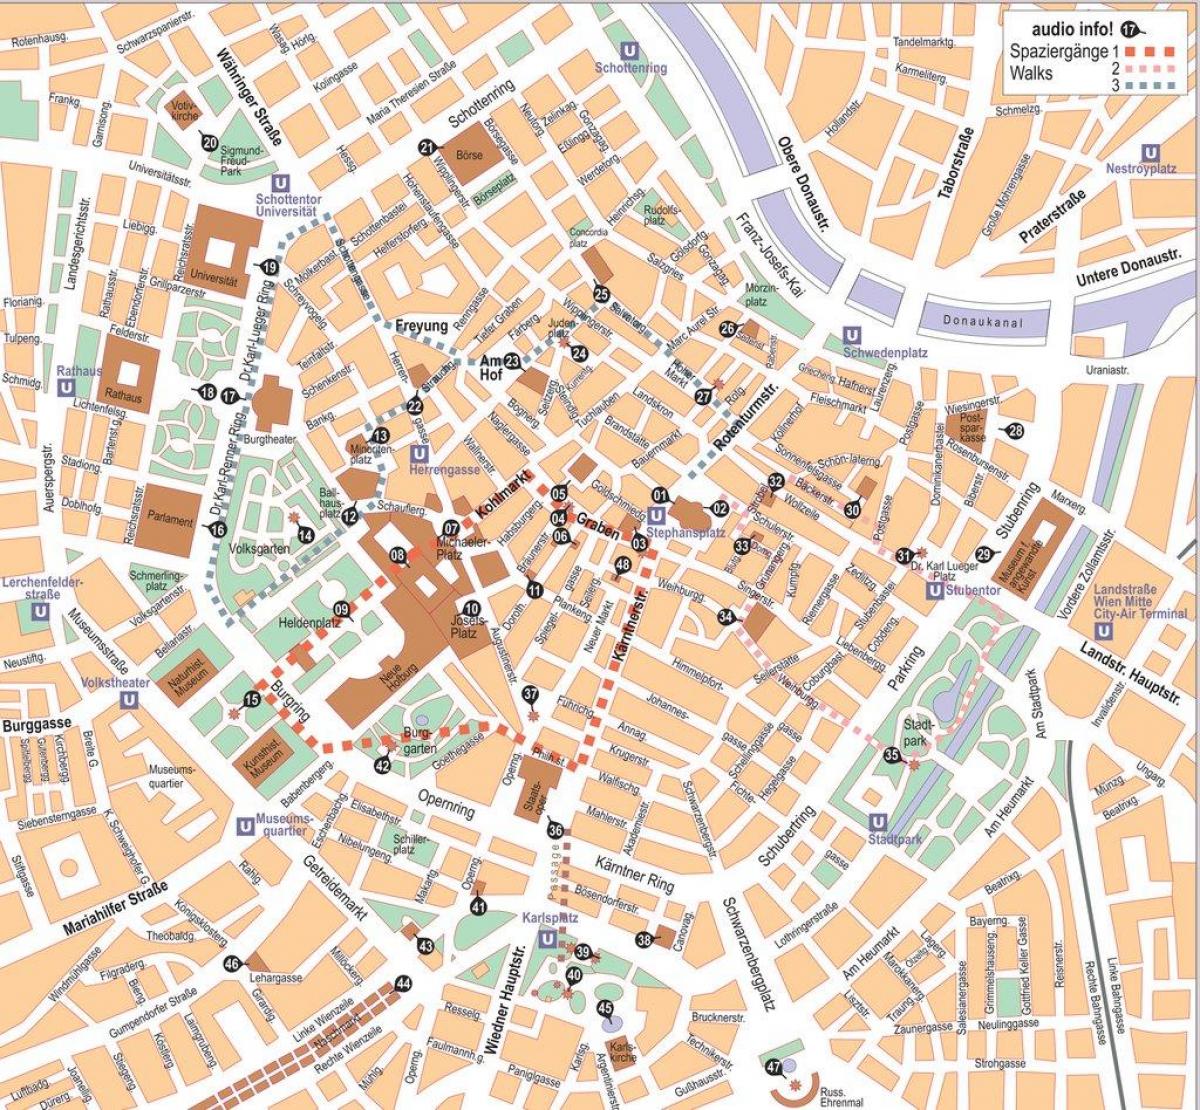 Mappa di Vienna centro